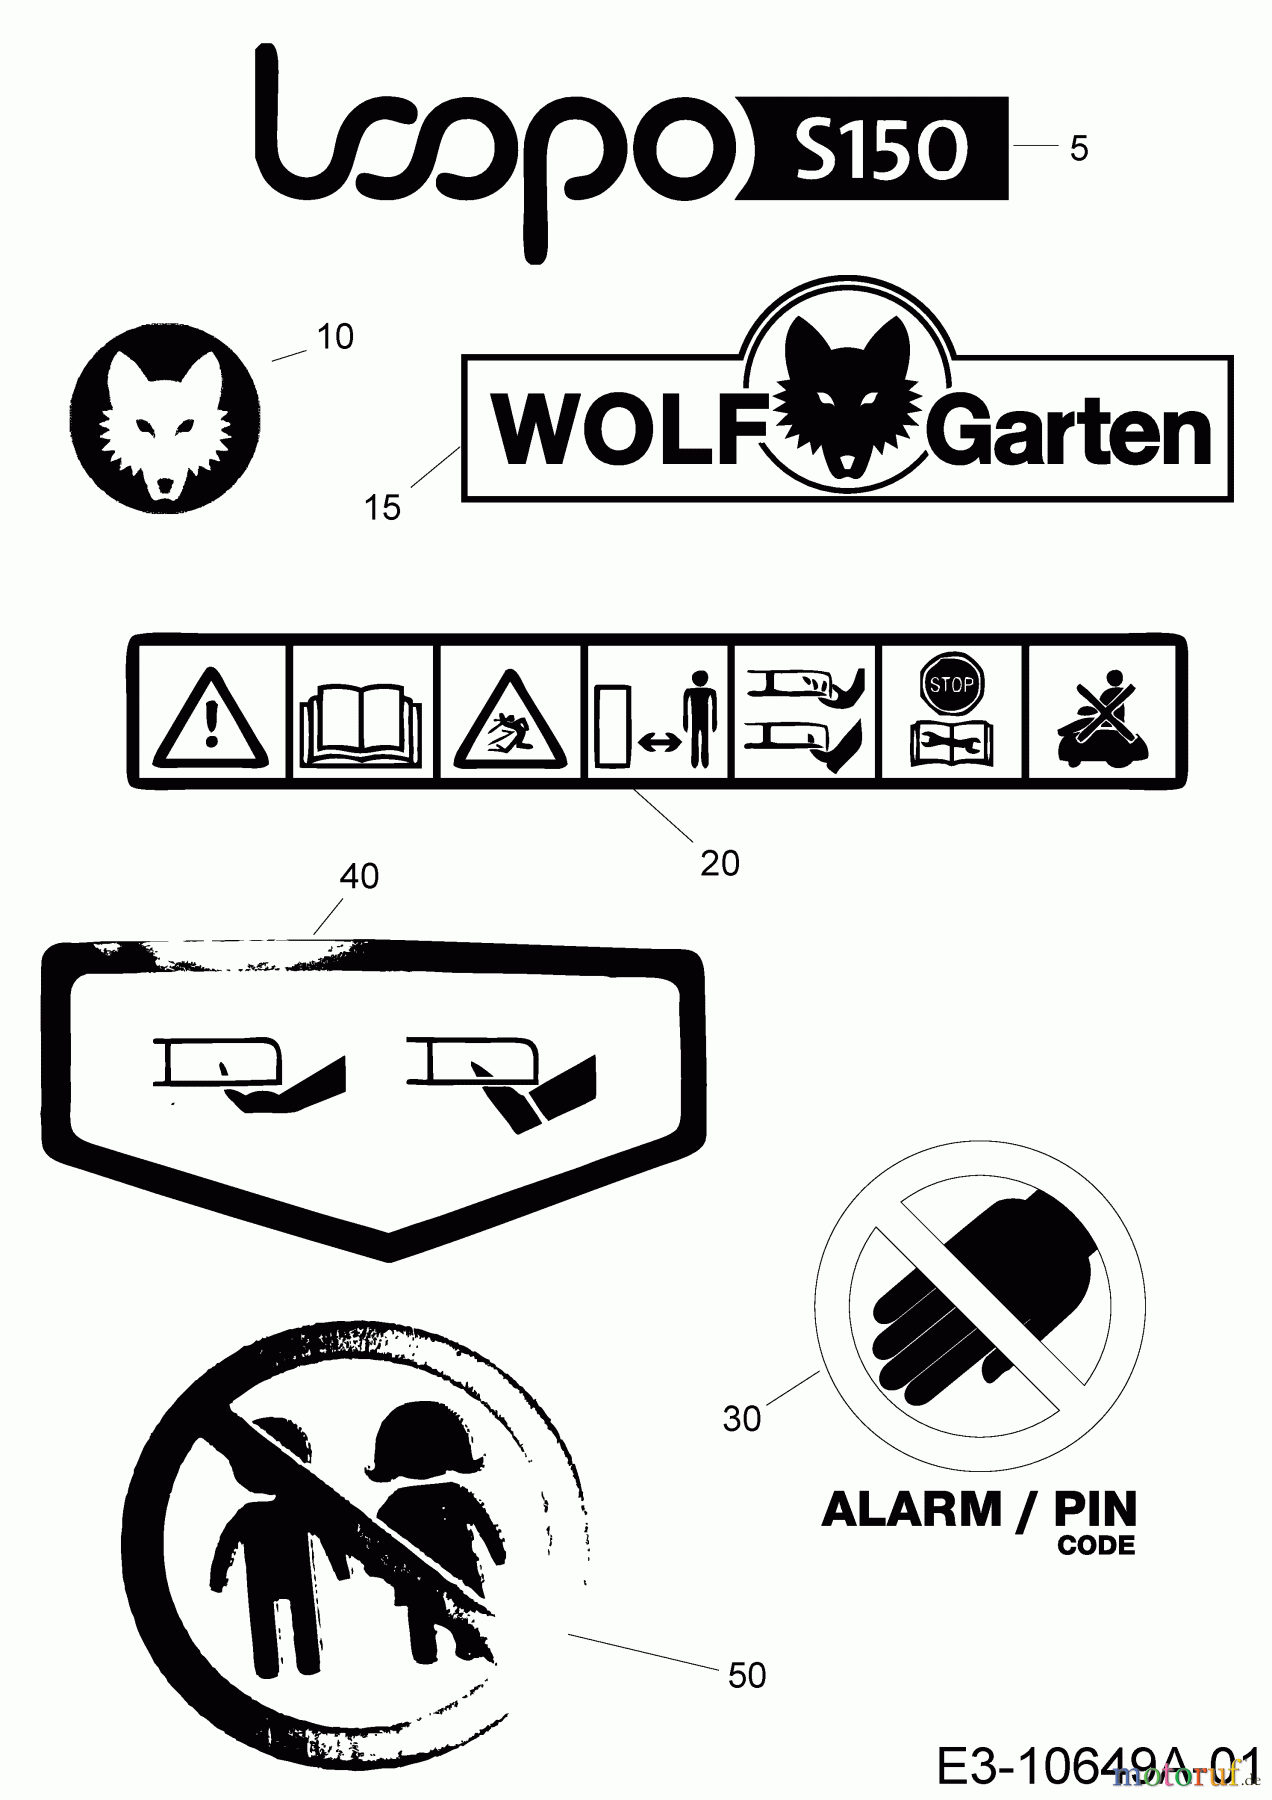  Wolf-Garten Robotic lawn mower Loopo S150 22AXBACA650  (2019) Labels